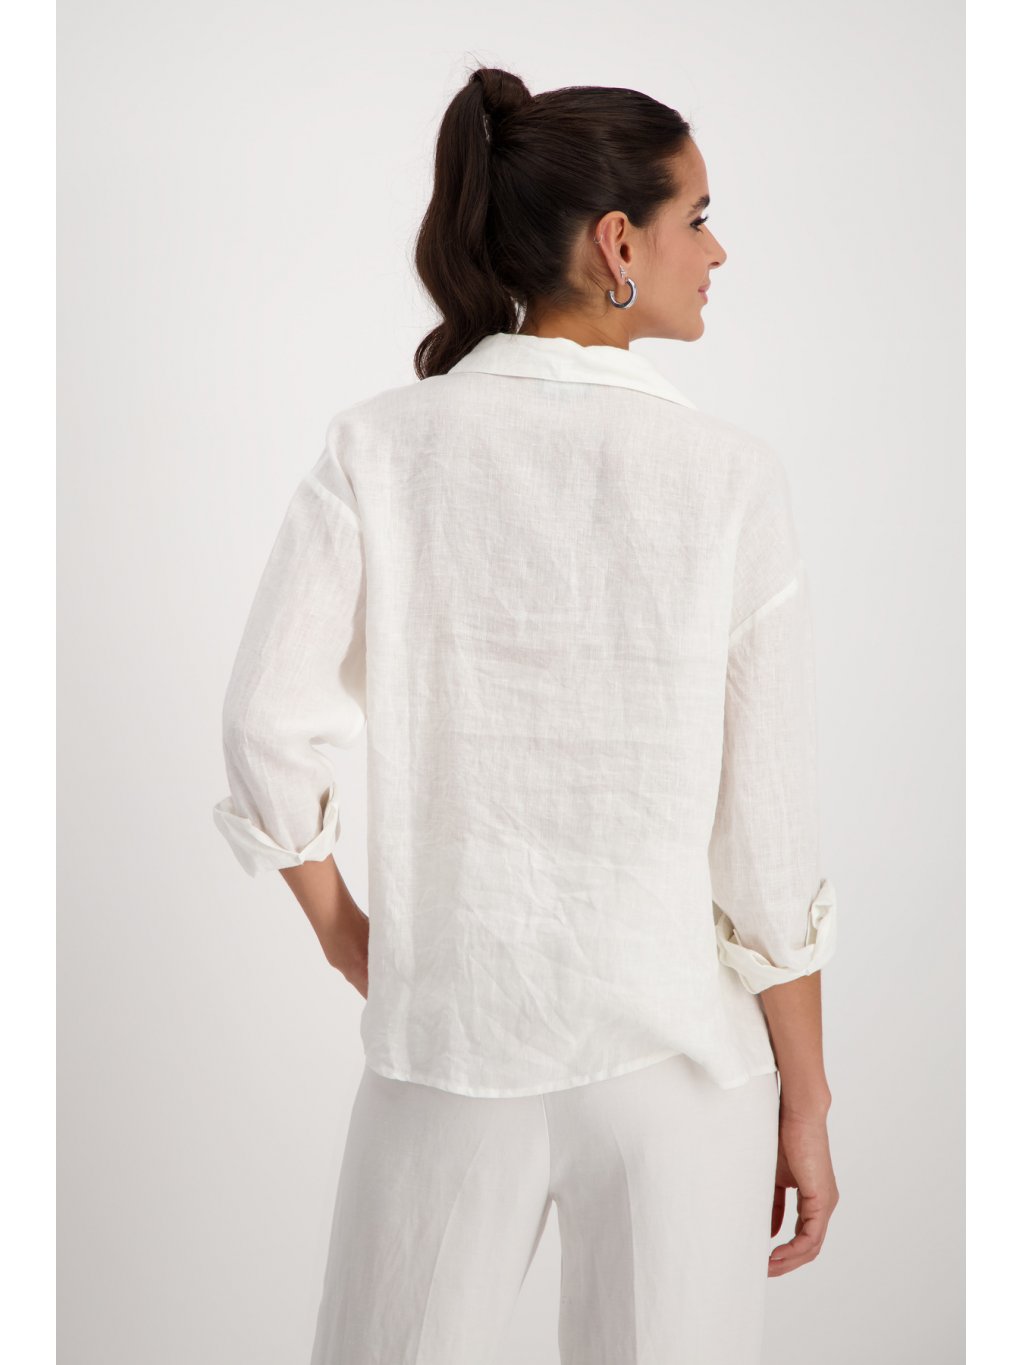 Košile Monari 8982 jemně bílá lněná s aplikací